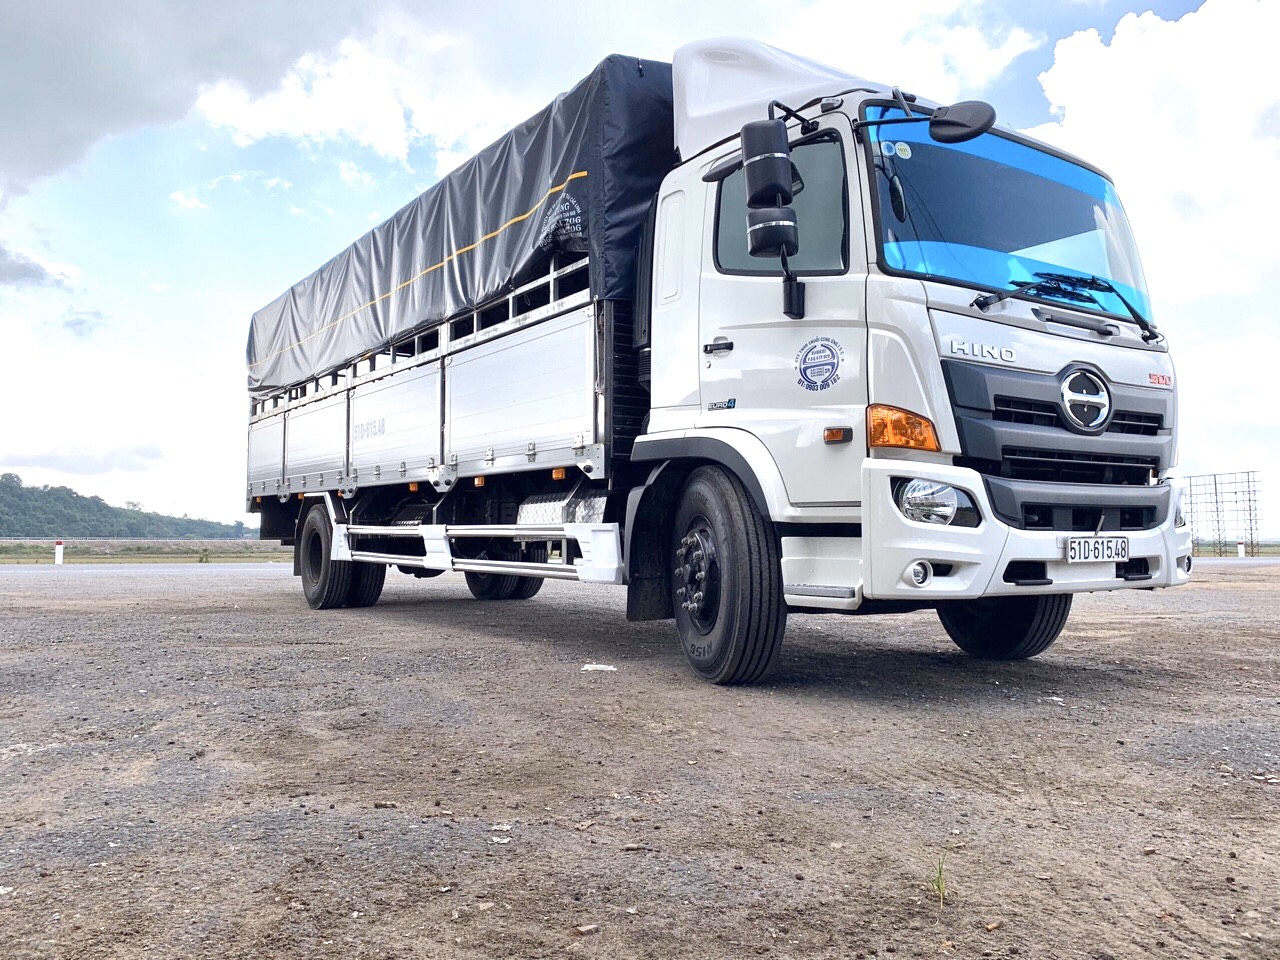 Xe tải Hino 8 tấn thùng mui bạt FG: Với thiết kế thùng xe mui bạt cao cấp, chiếc xe tải Hino 8 tấn thùng mui bạt FG này sẽ giúp bạn chuyên chở các loại hàng hóa đặc biệt dễ dàng hơn. Đặc biệt, sự tiết kiệm nhiên liệu của chiếc xe này sẽ giúp bạn tiết kiệm chi phí vận hành.